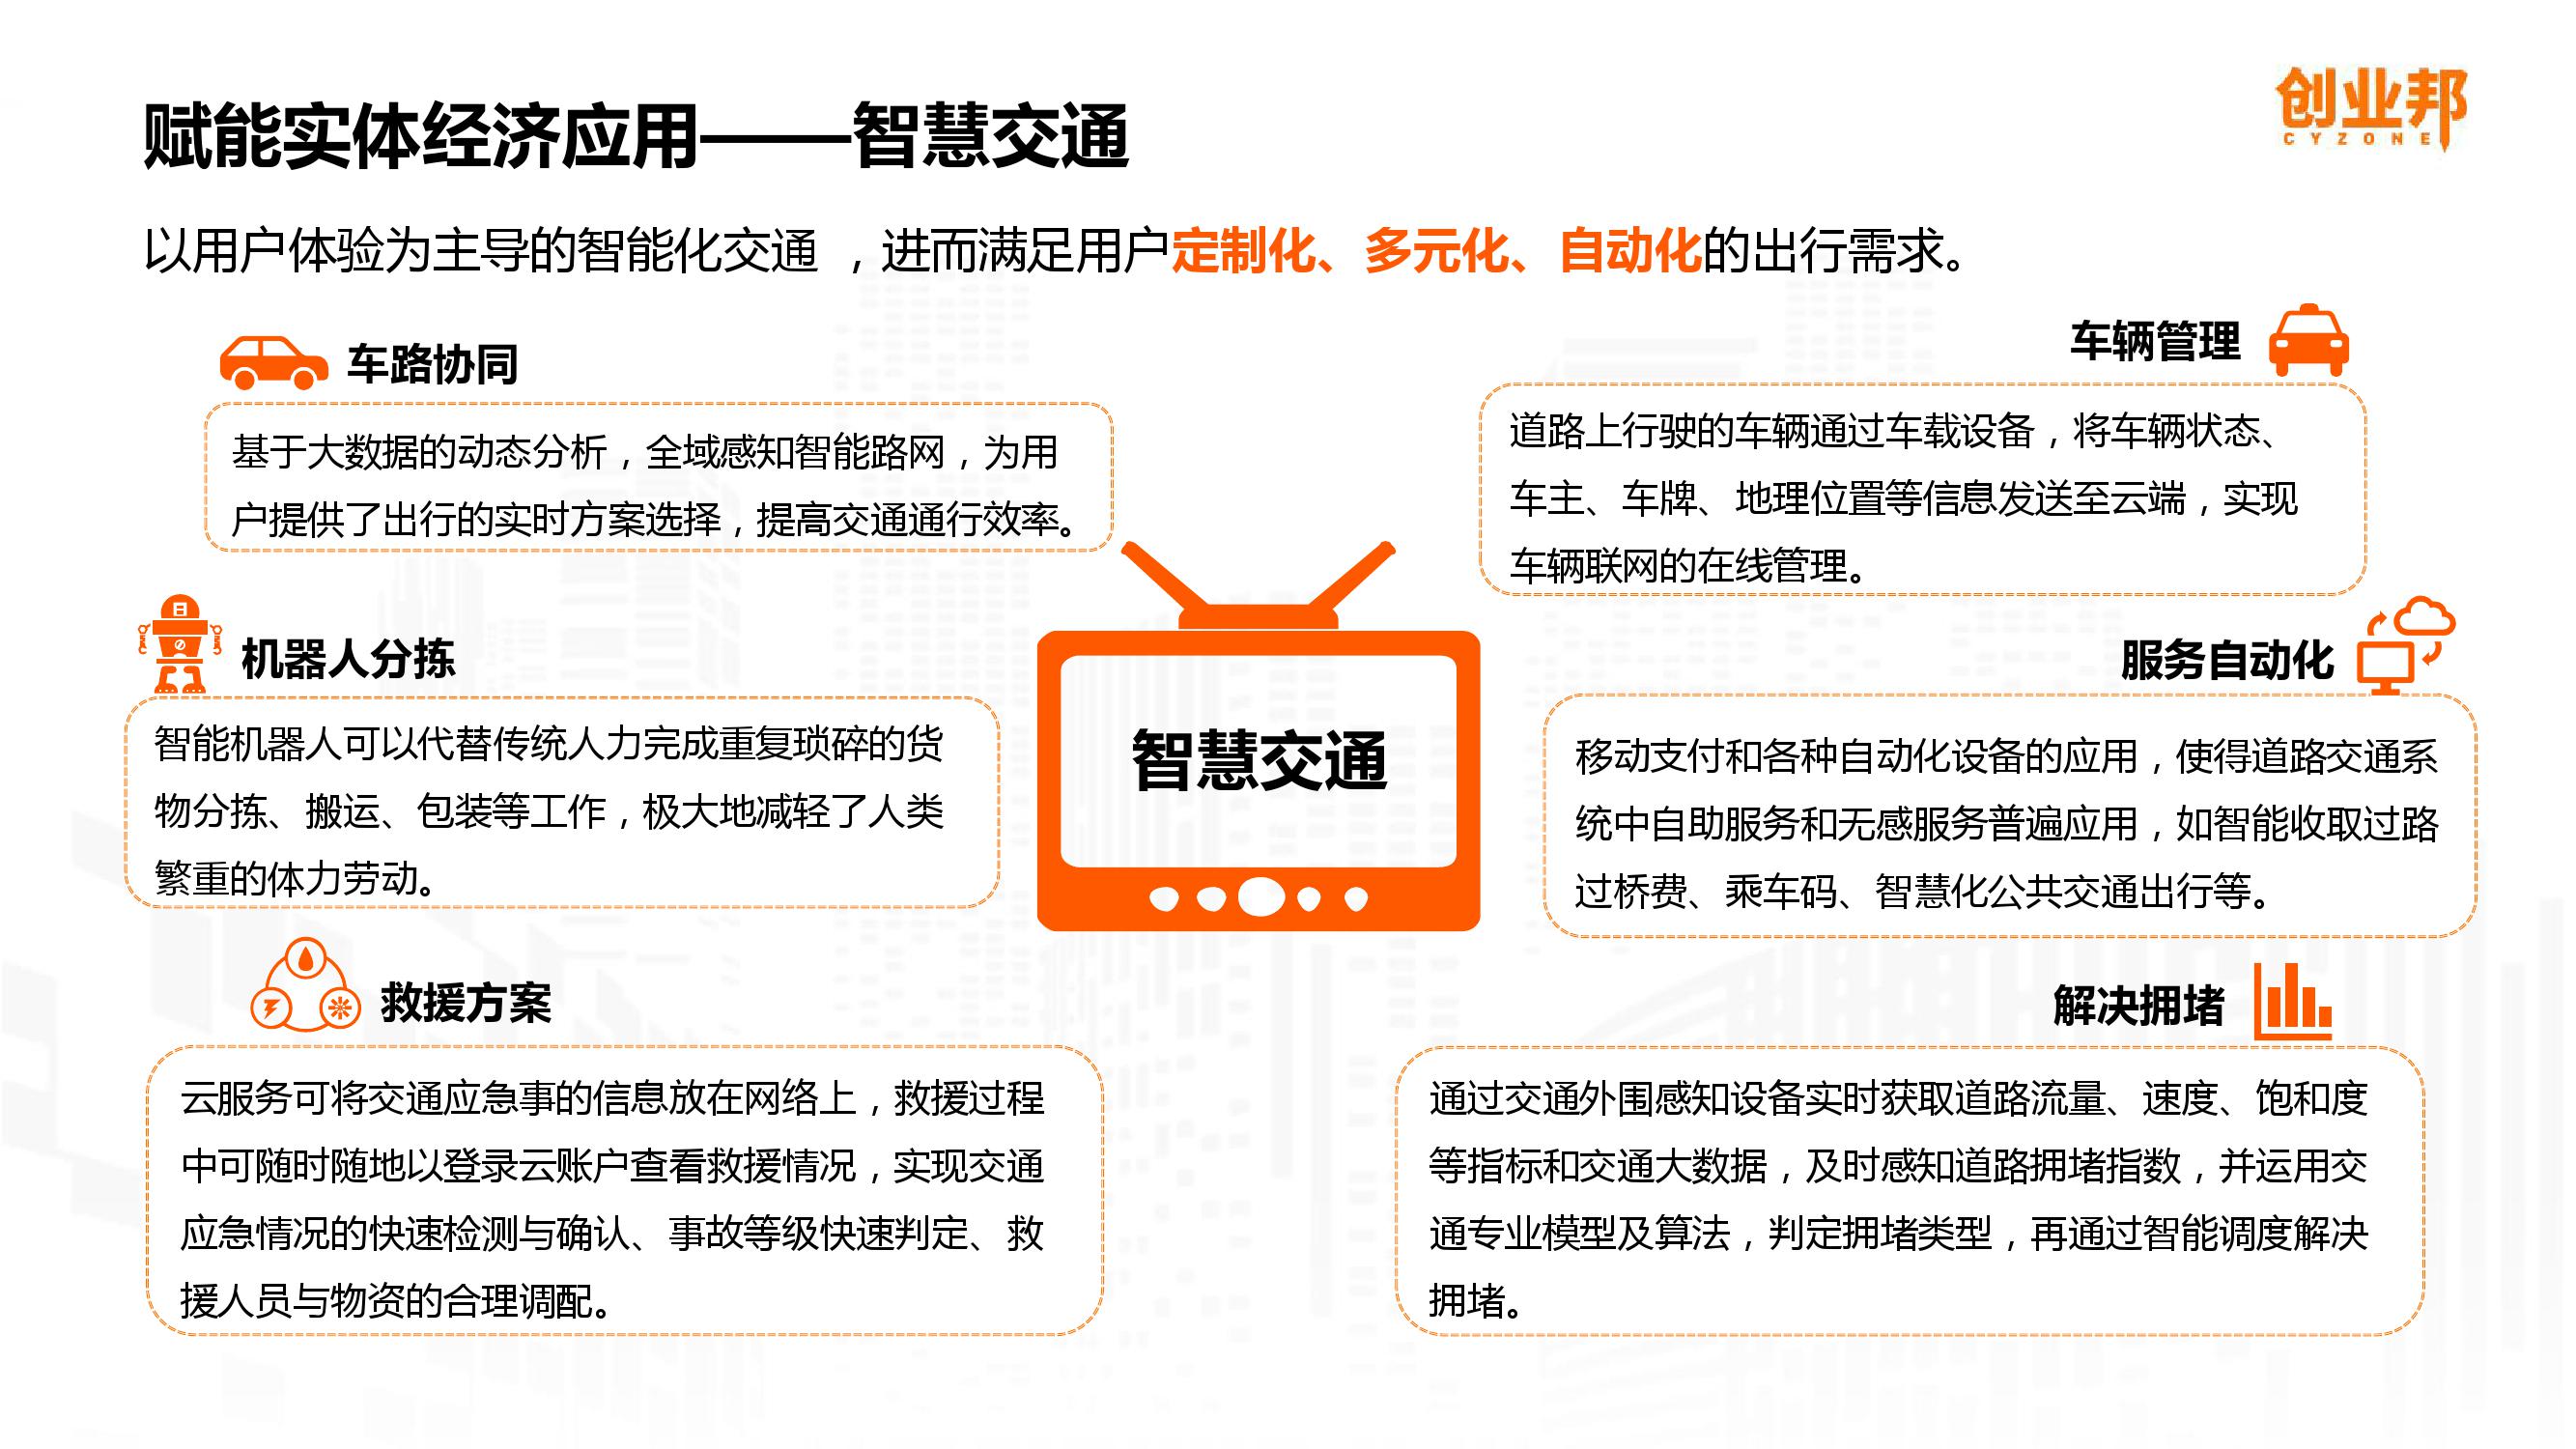 2019中国企业数字化智能化研究报告_000030-3